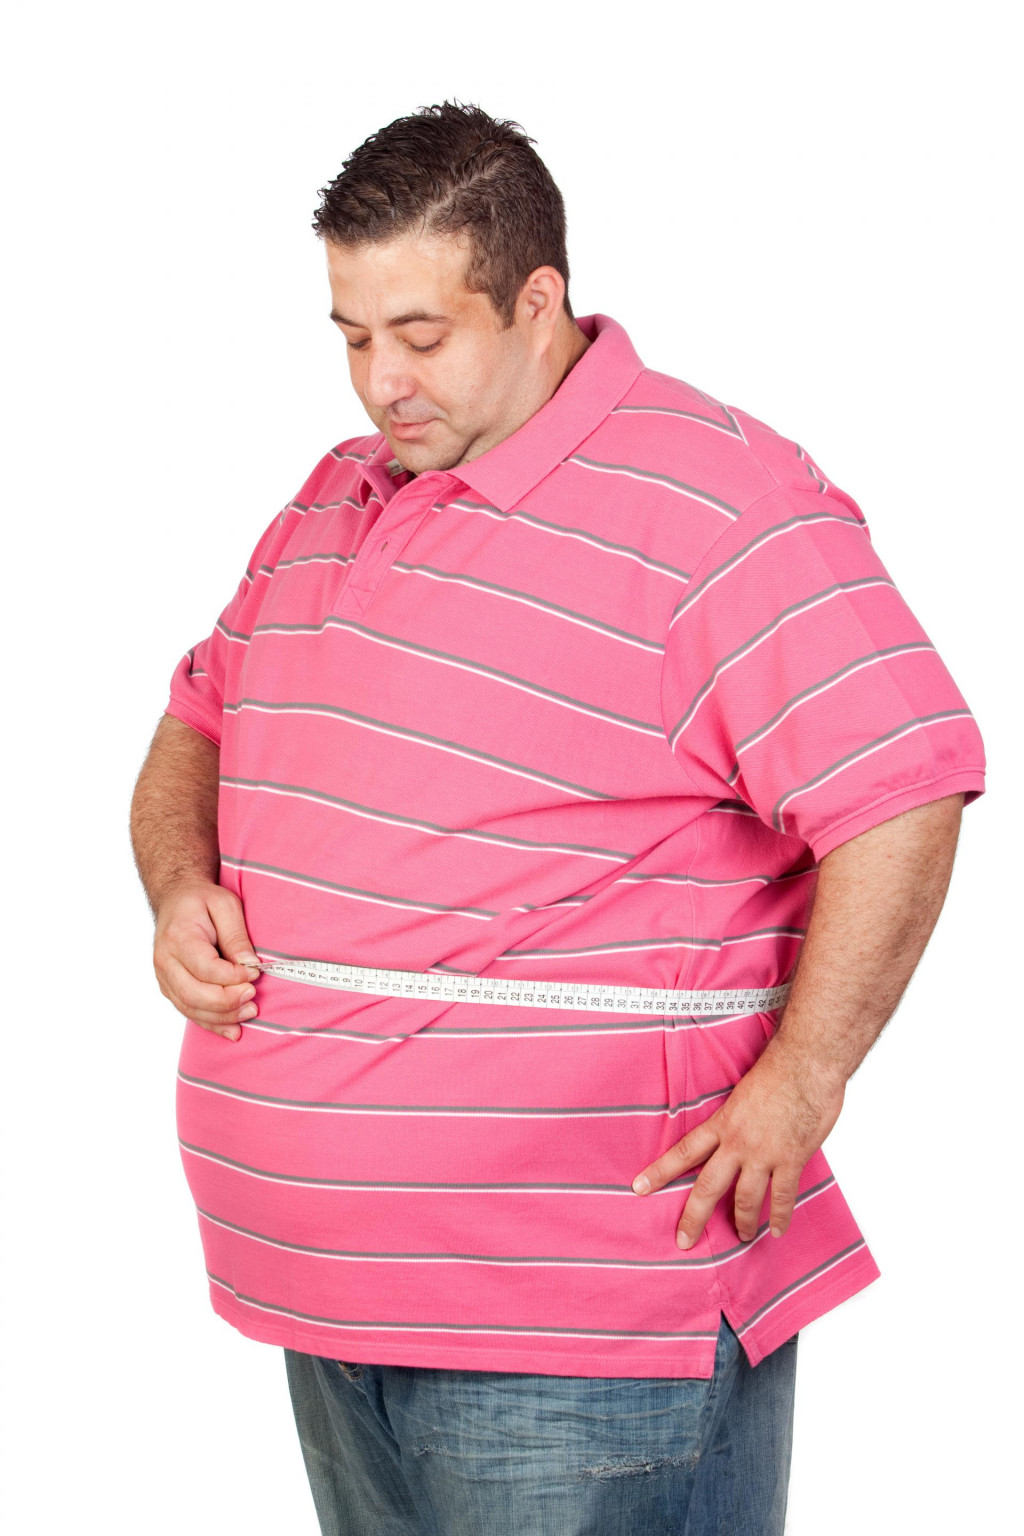 &lt;p&gt;Obezita ovplyvňuje celý organizmus&lt;/p&gt;